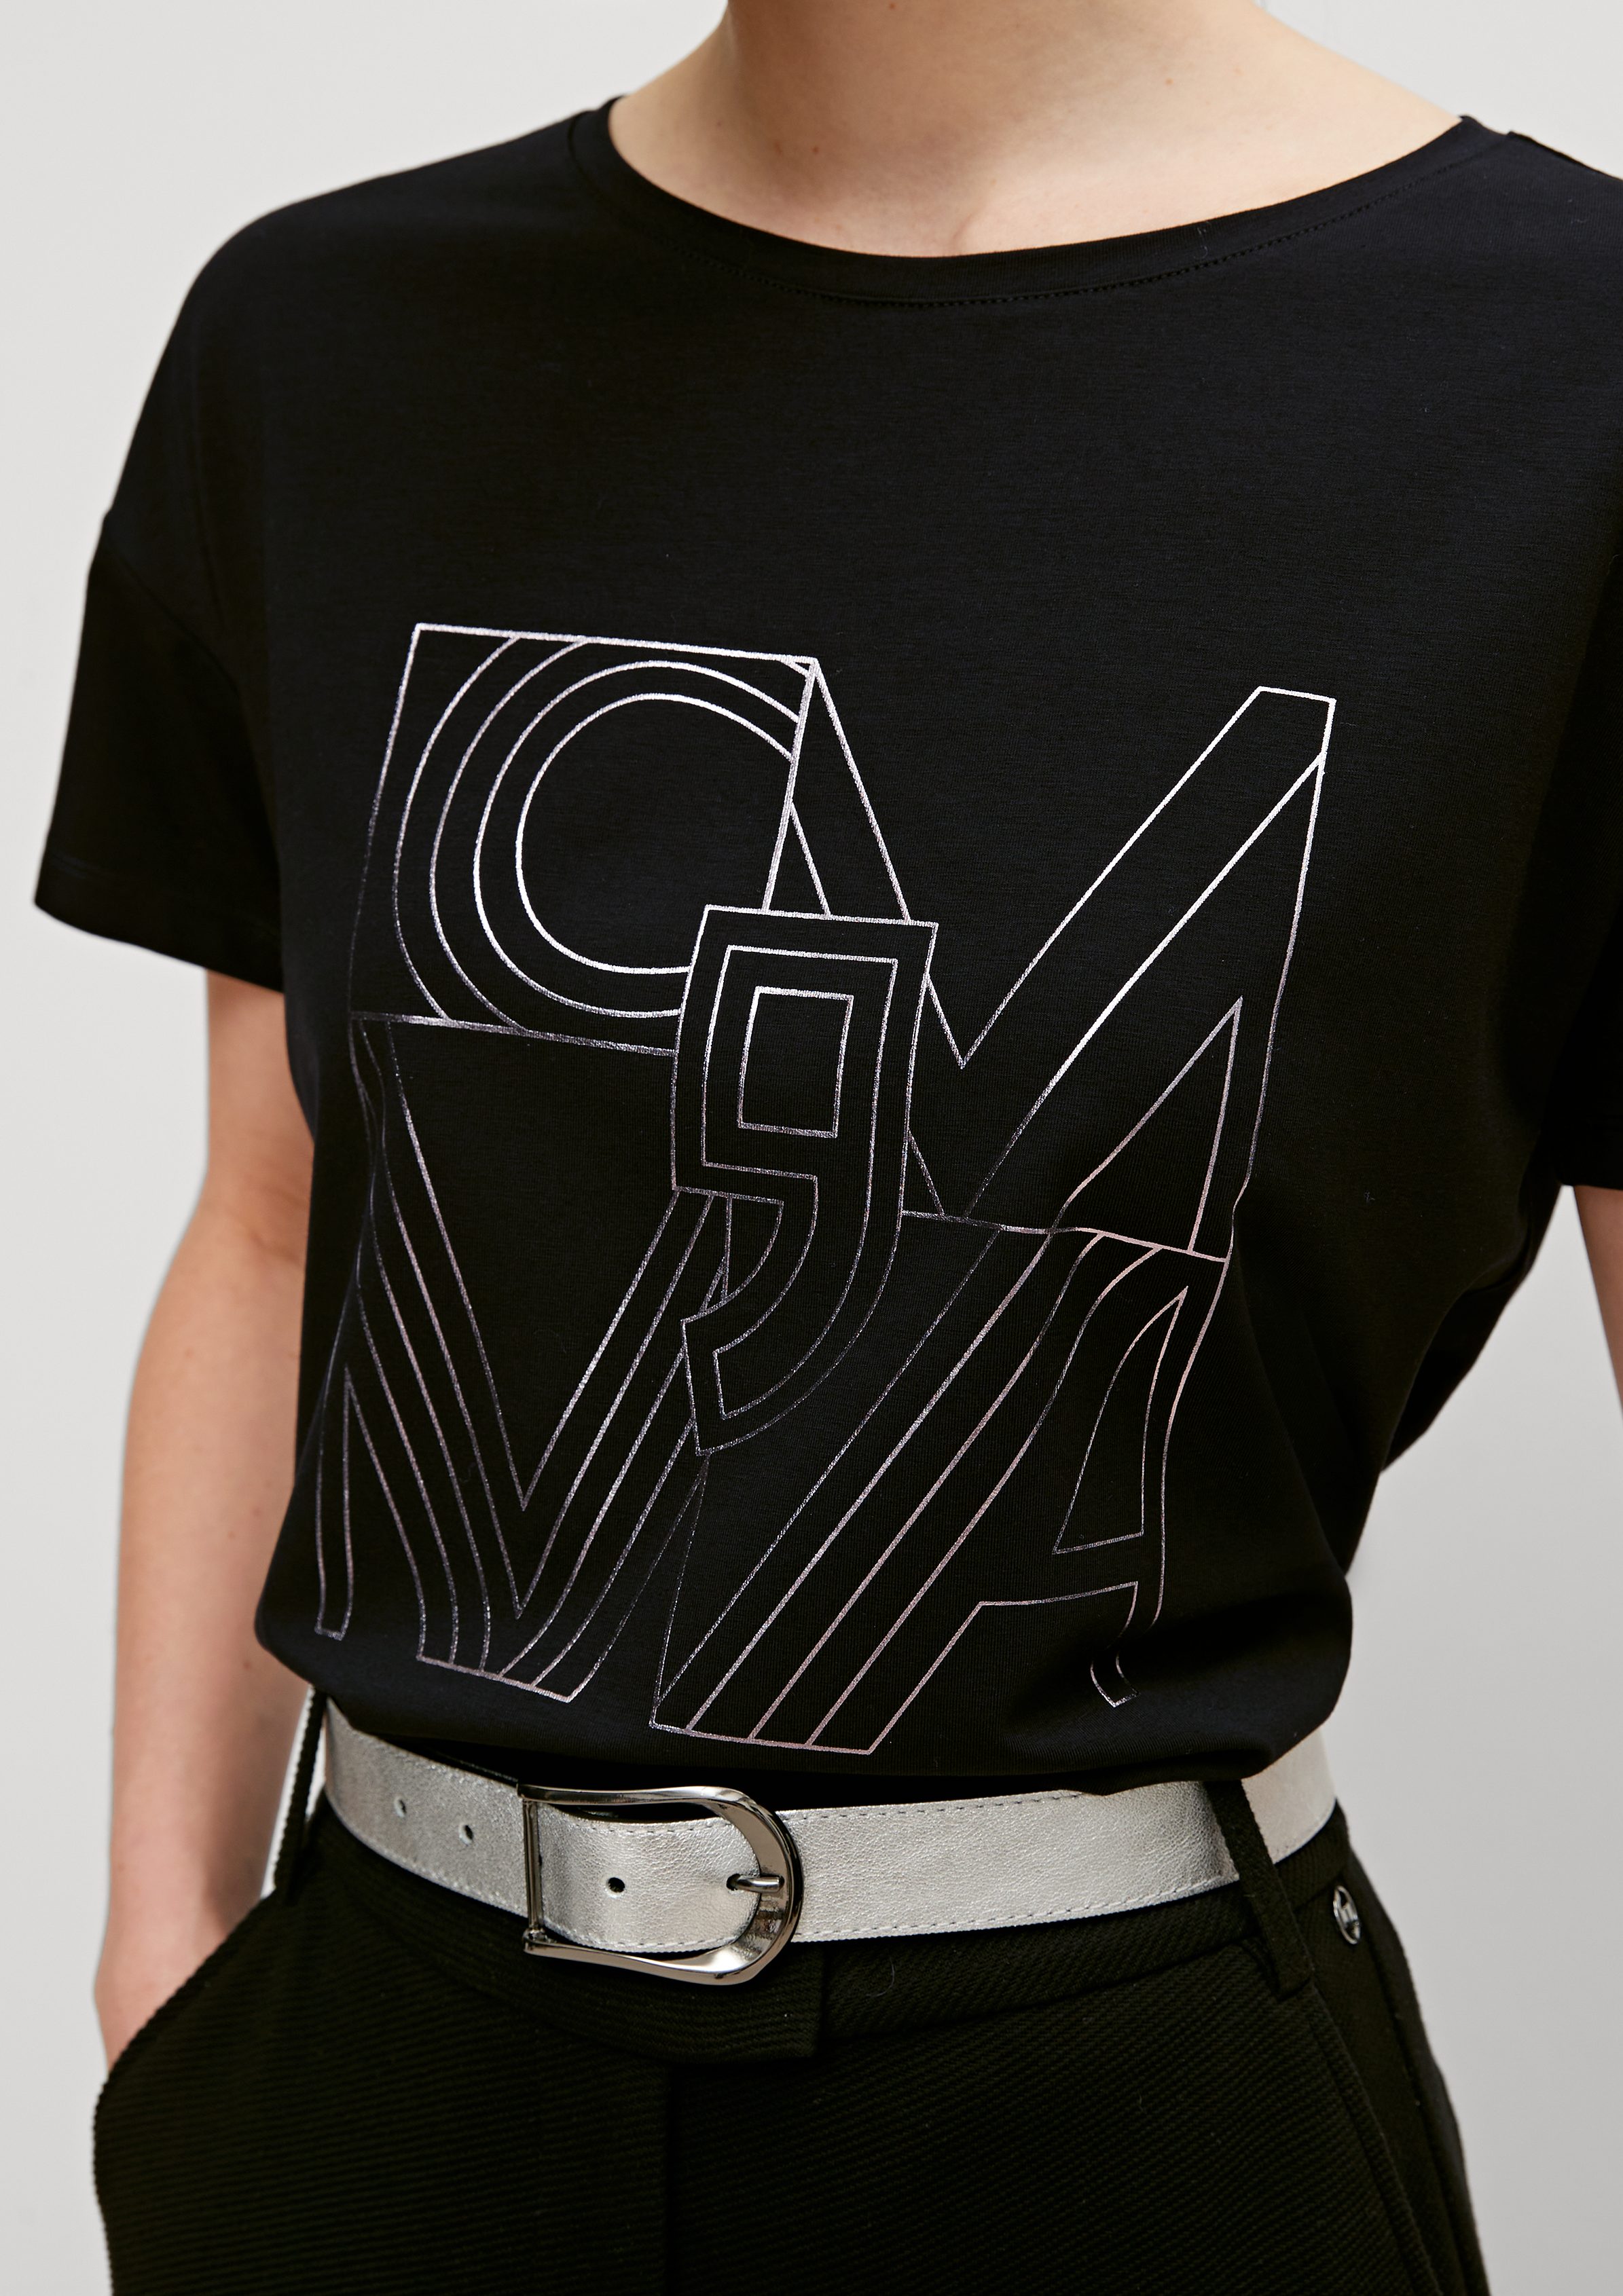 Kurzarmshirt T-Shirt schwarz Artwork Comma mit Frontprint